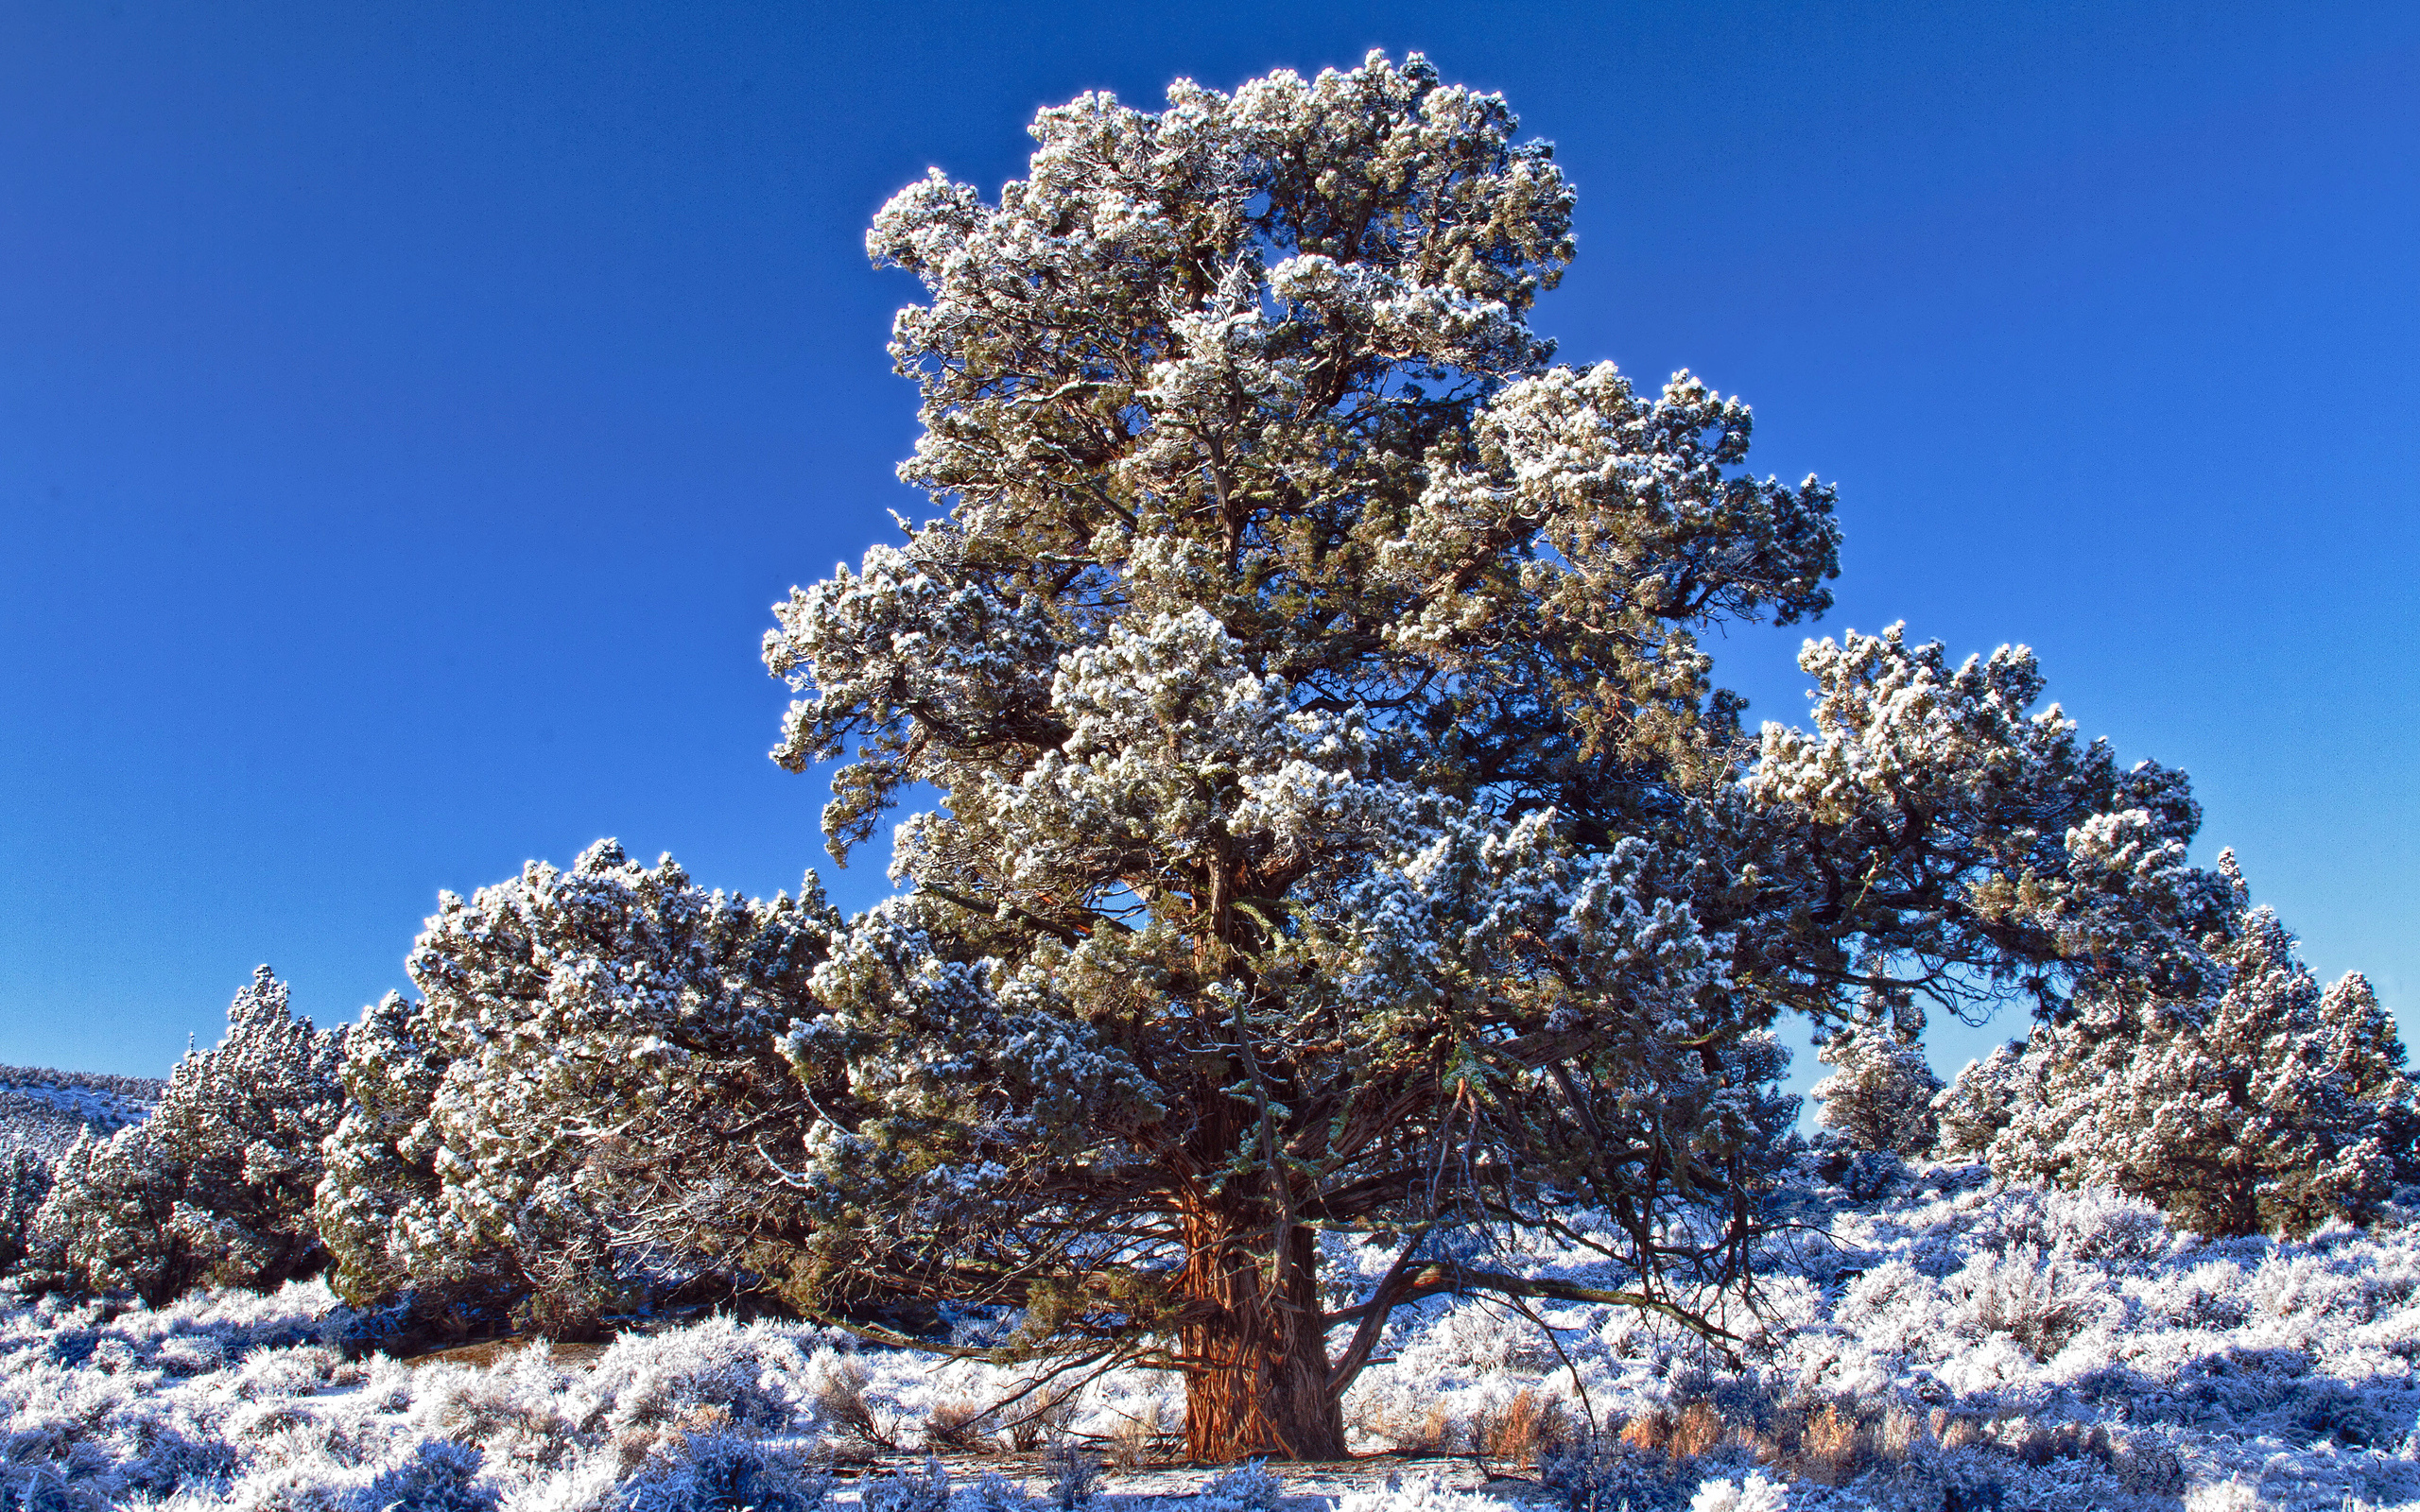 استوک فصل زمستان و تک درخت قدیمی محصور میان برف های سفید 